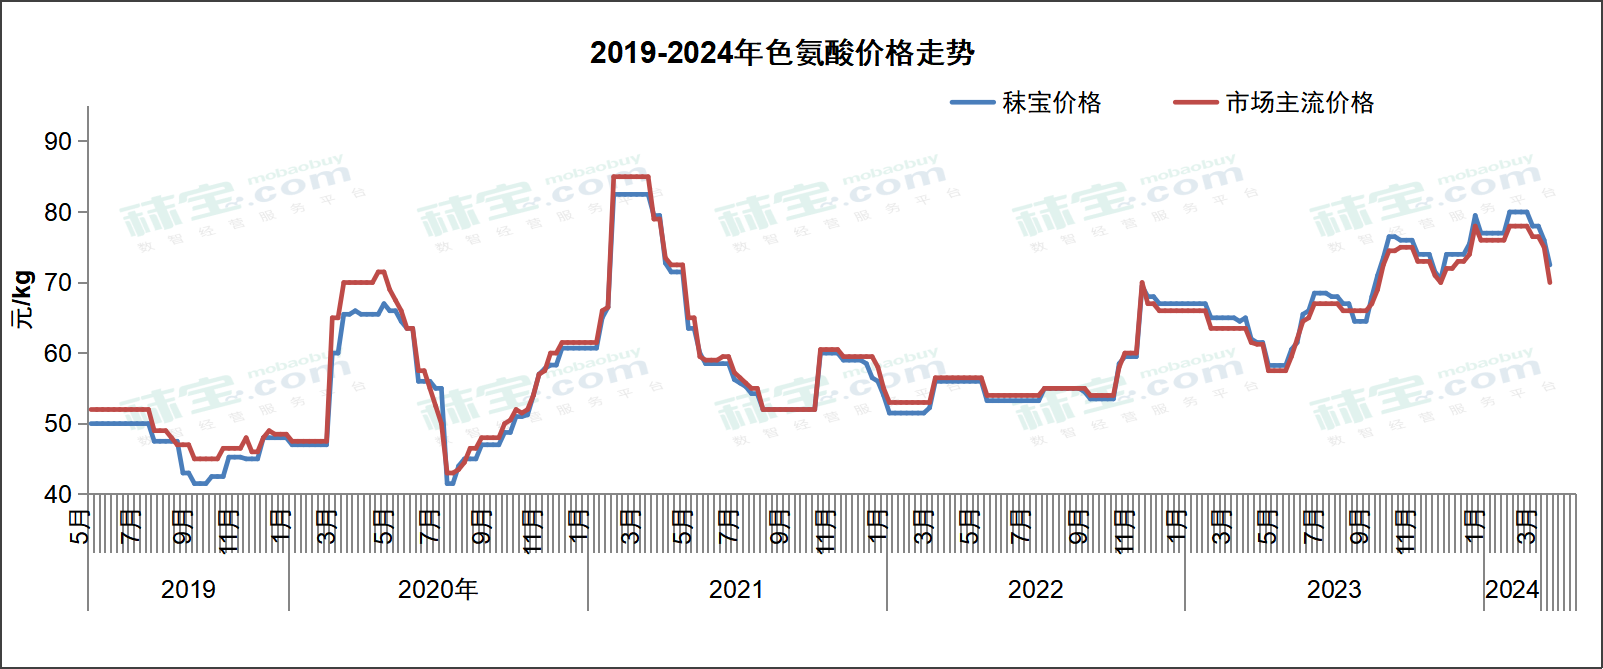 2019-2024年色氨酸价格走势